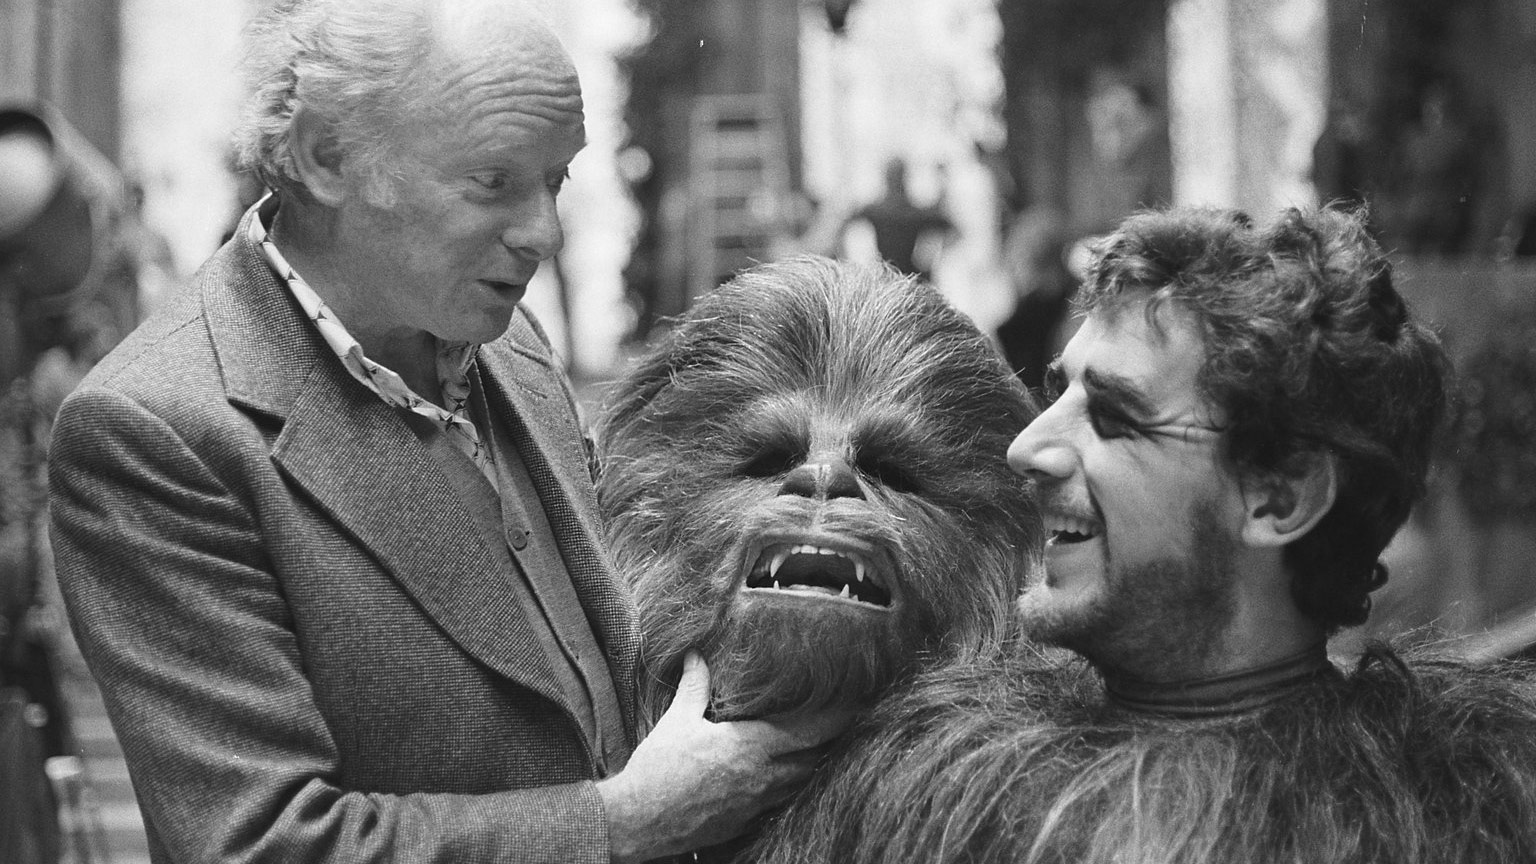 Ator que fez Chewbacca publica fotos raras dos bastidores de Star Wars -  Canaltech